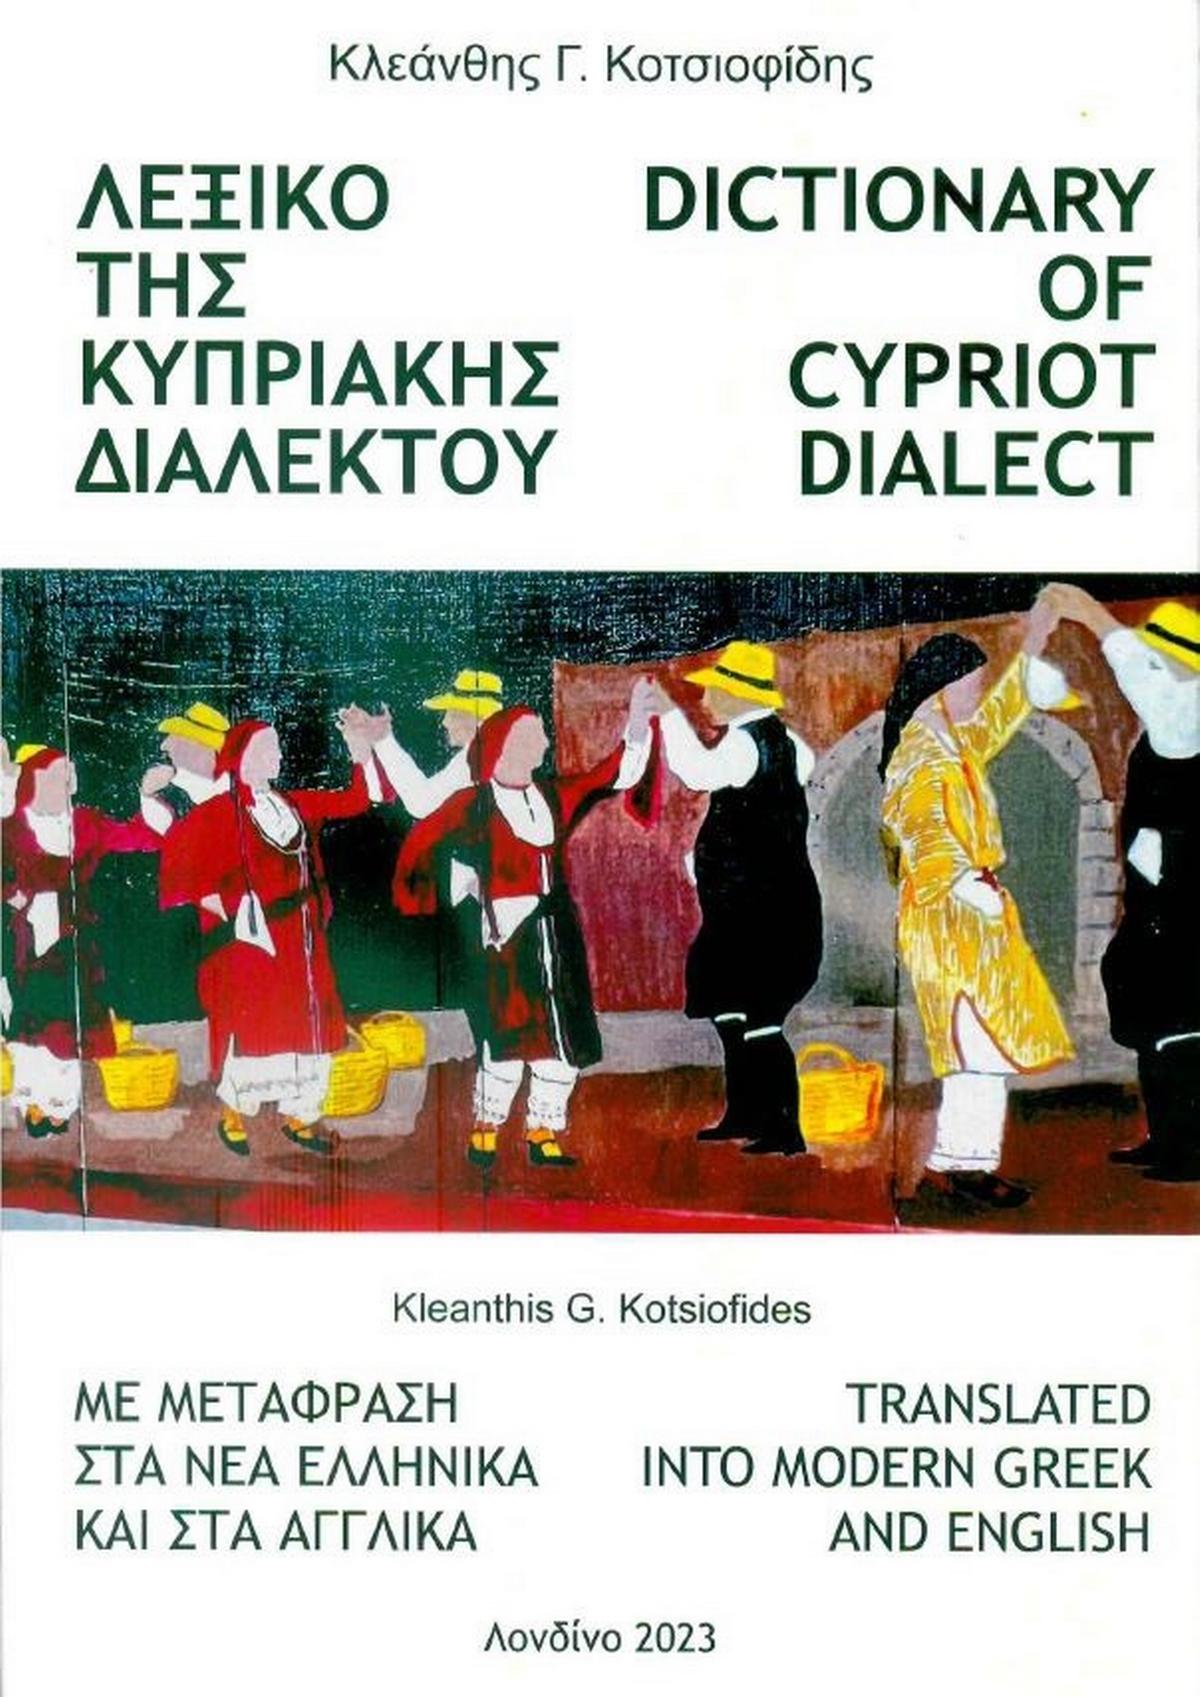 Λεξικό της Κυπριακής Διαλέκτου